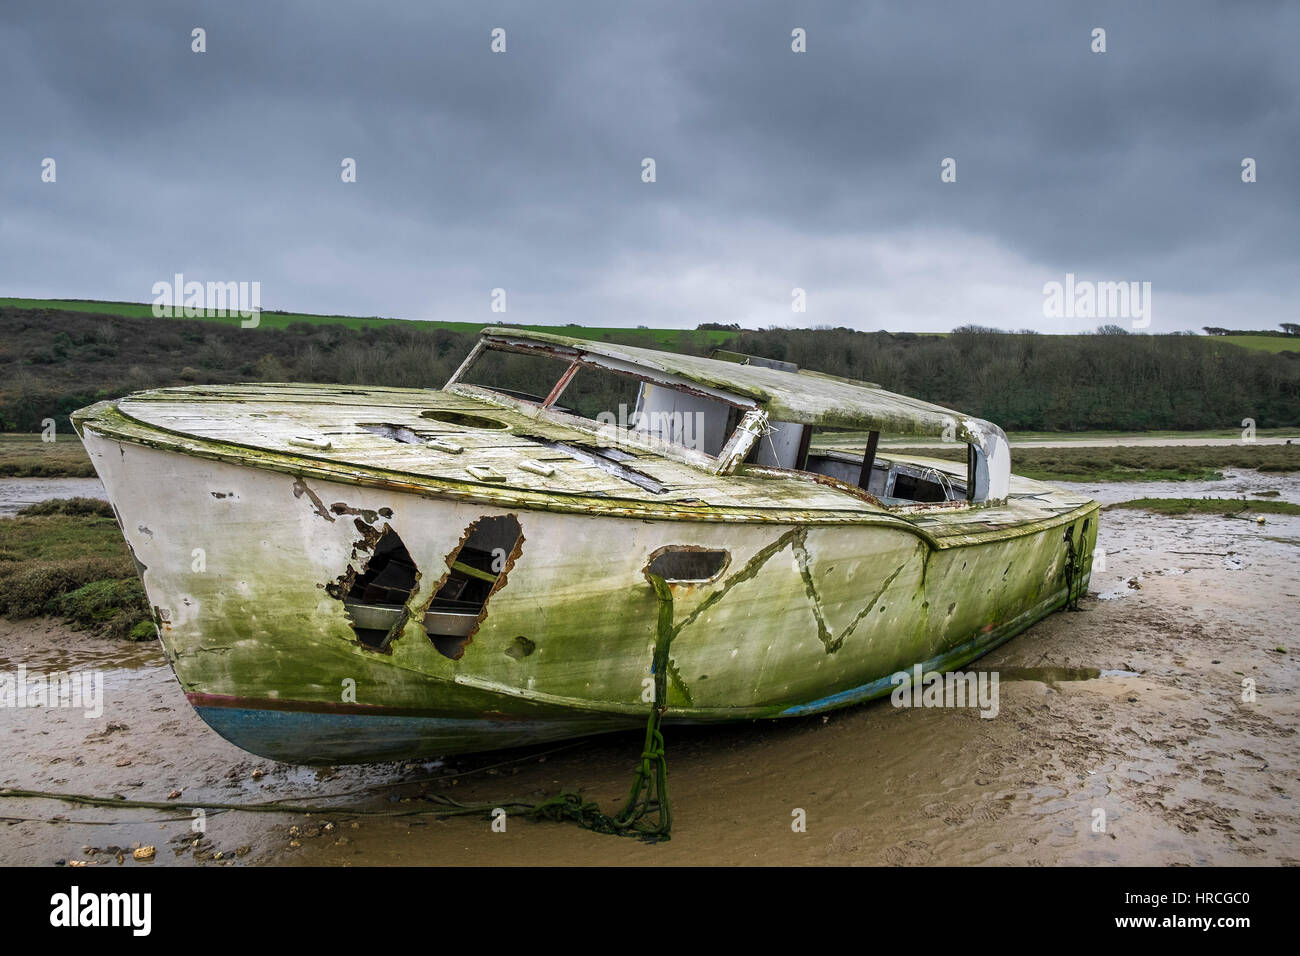 Rimane barca abbandonata spiaggiata gannel estuary cupo nuvoloso giorno newquay cornwall regno unito meteo Foto Stock